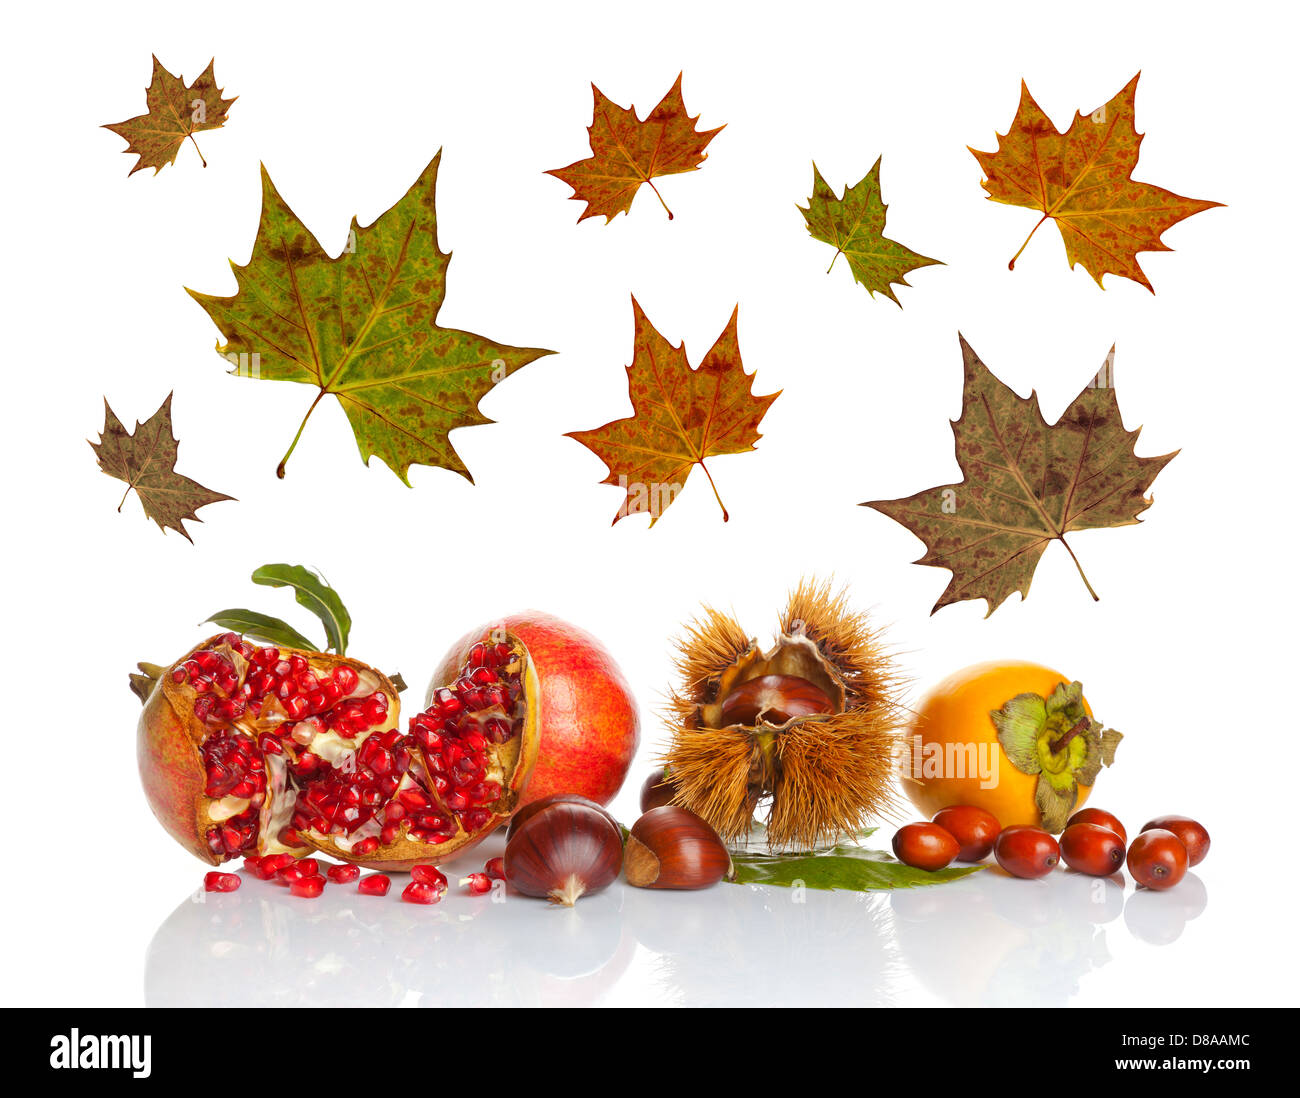 Fruits d'automne avec des feuilles sur fond blanc Banque D'Images